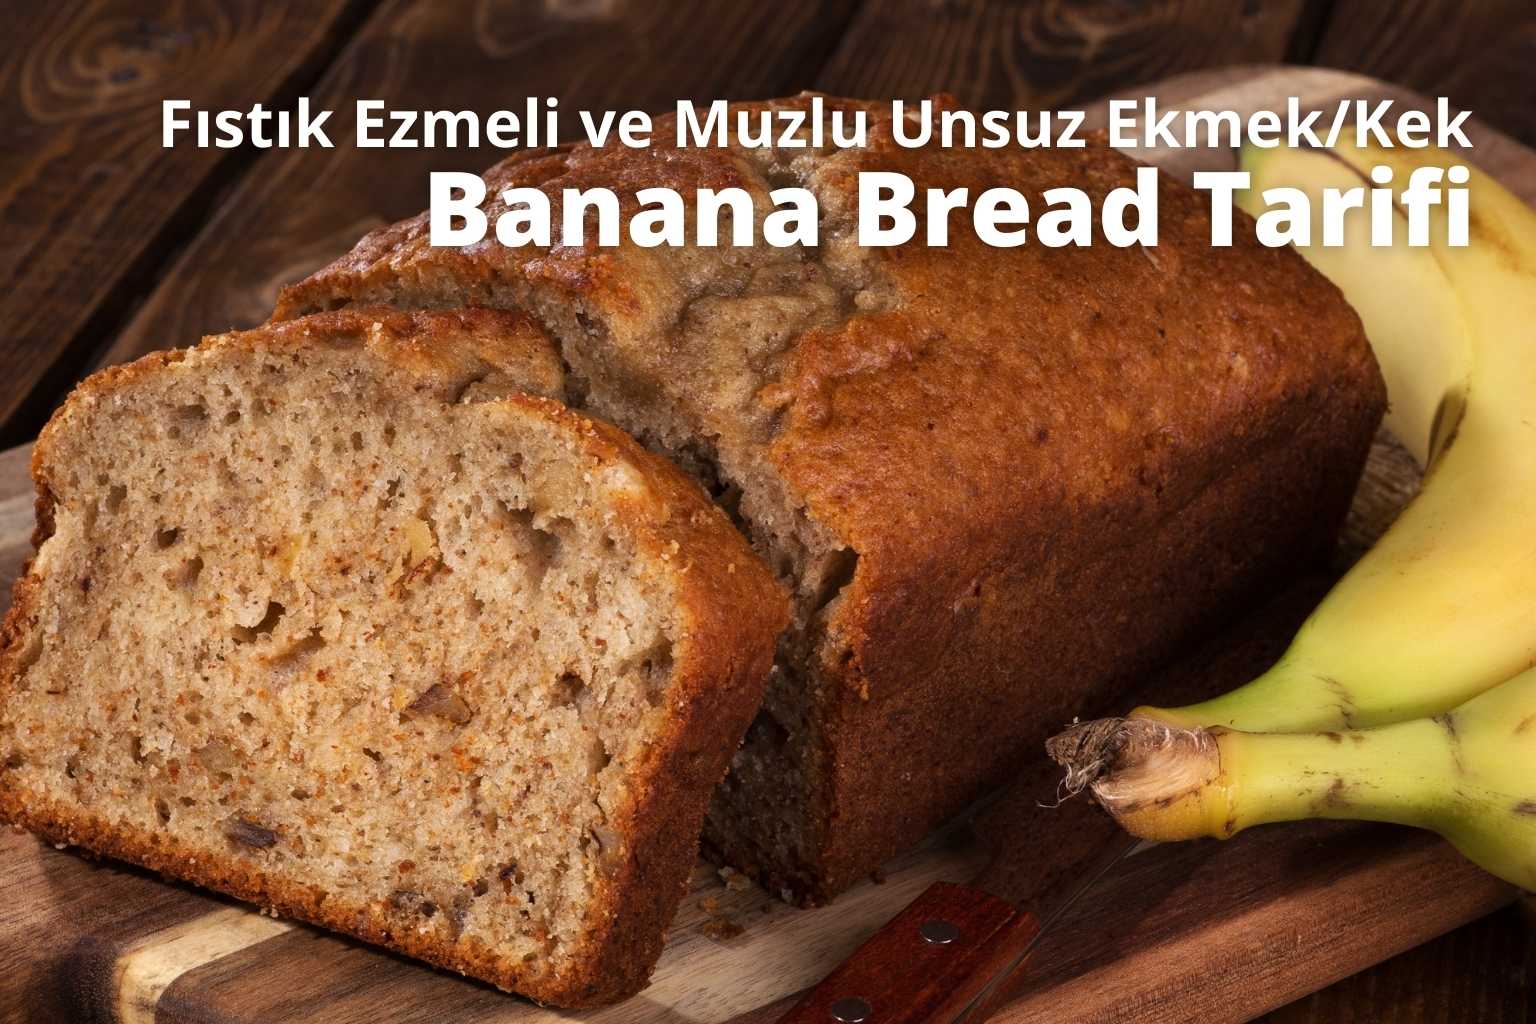 Fıstık Ezmeli ve Muzlu Unsuz Ekmek/Kek (Banana Bread) Tarifi